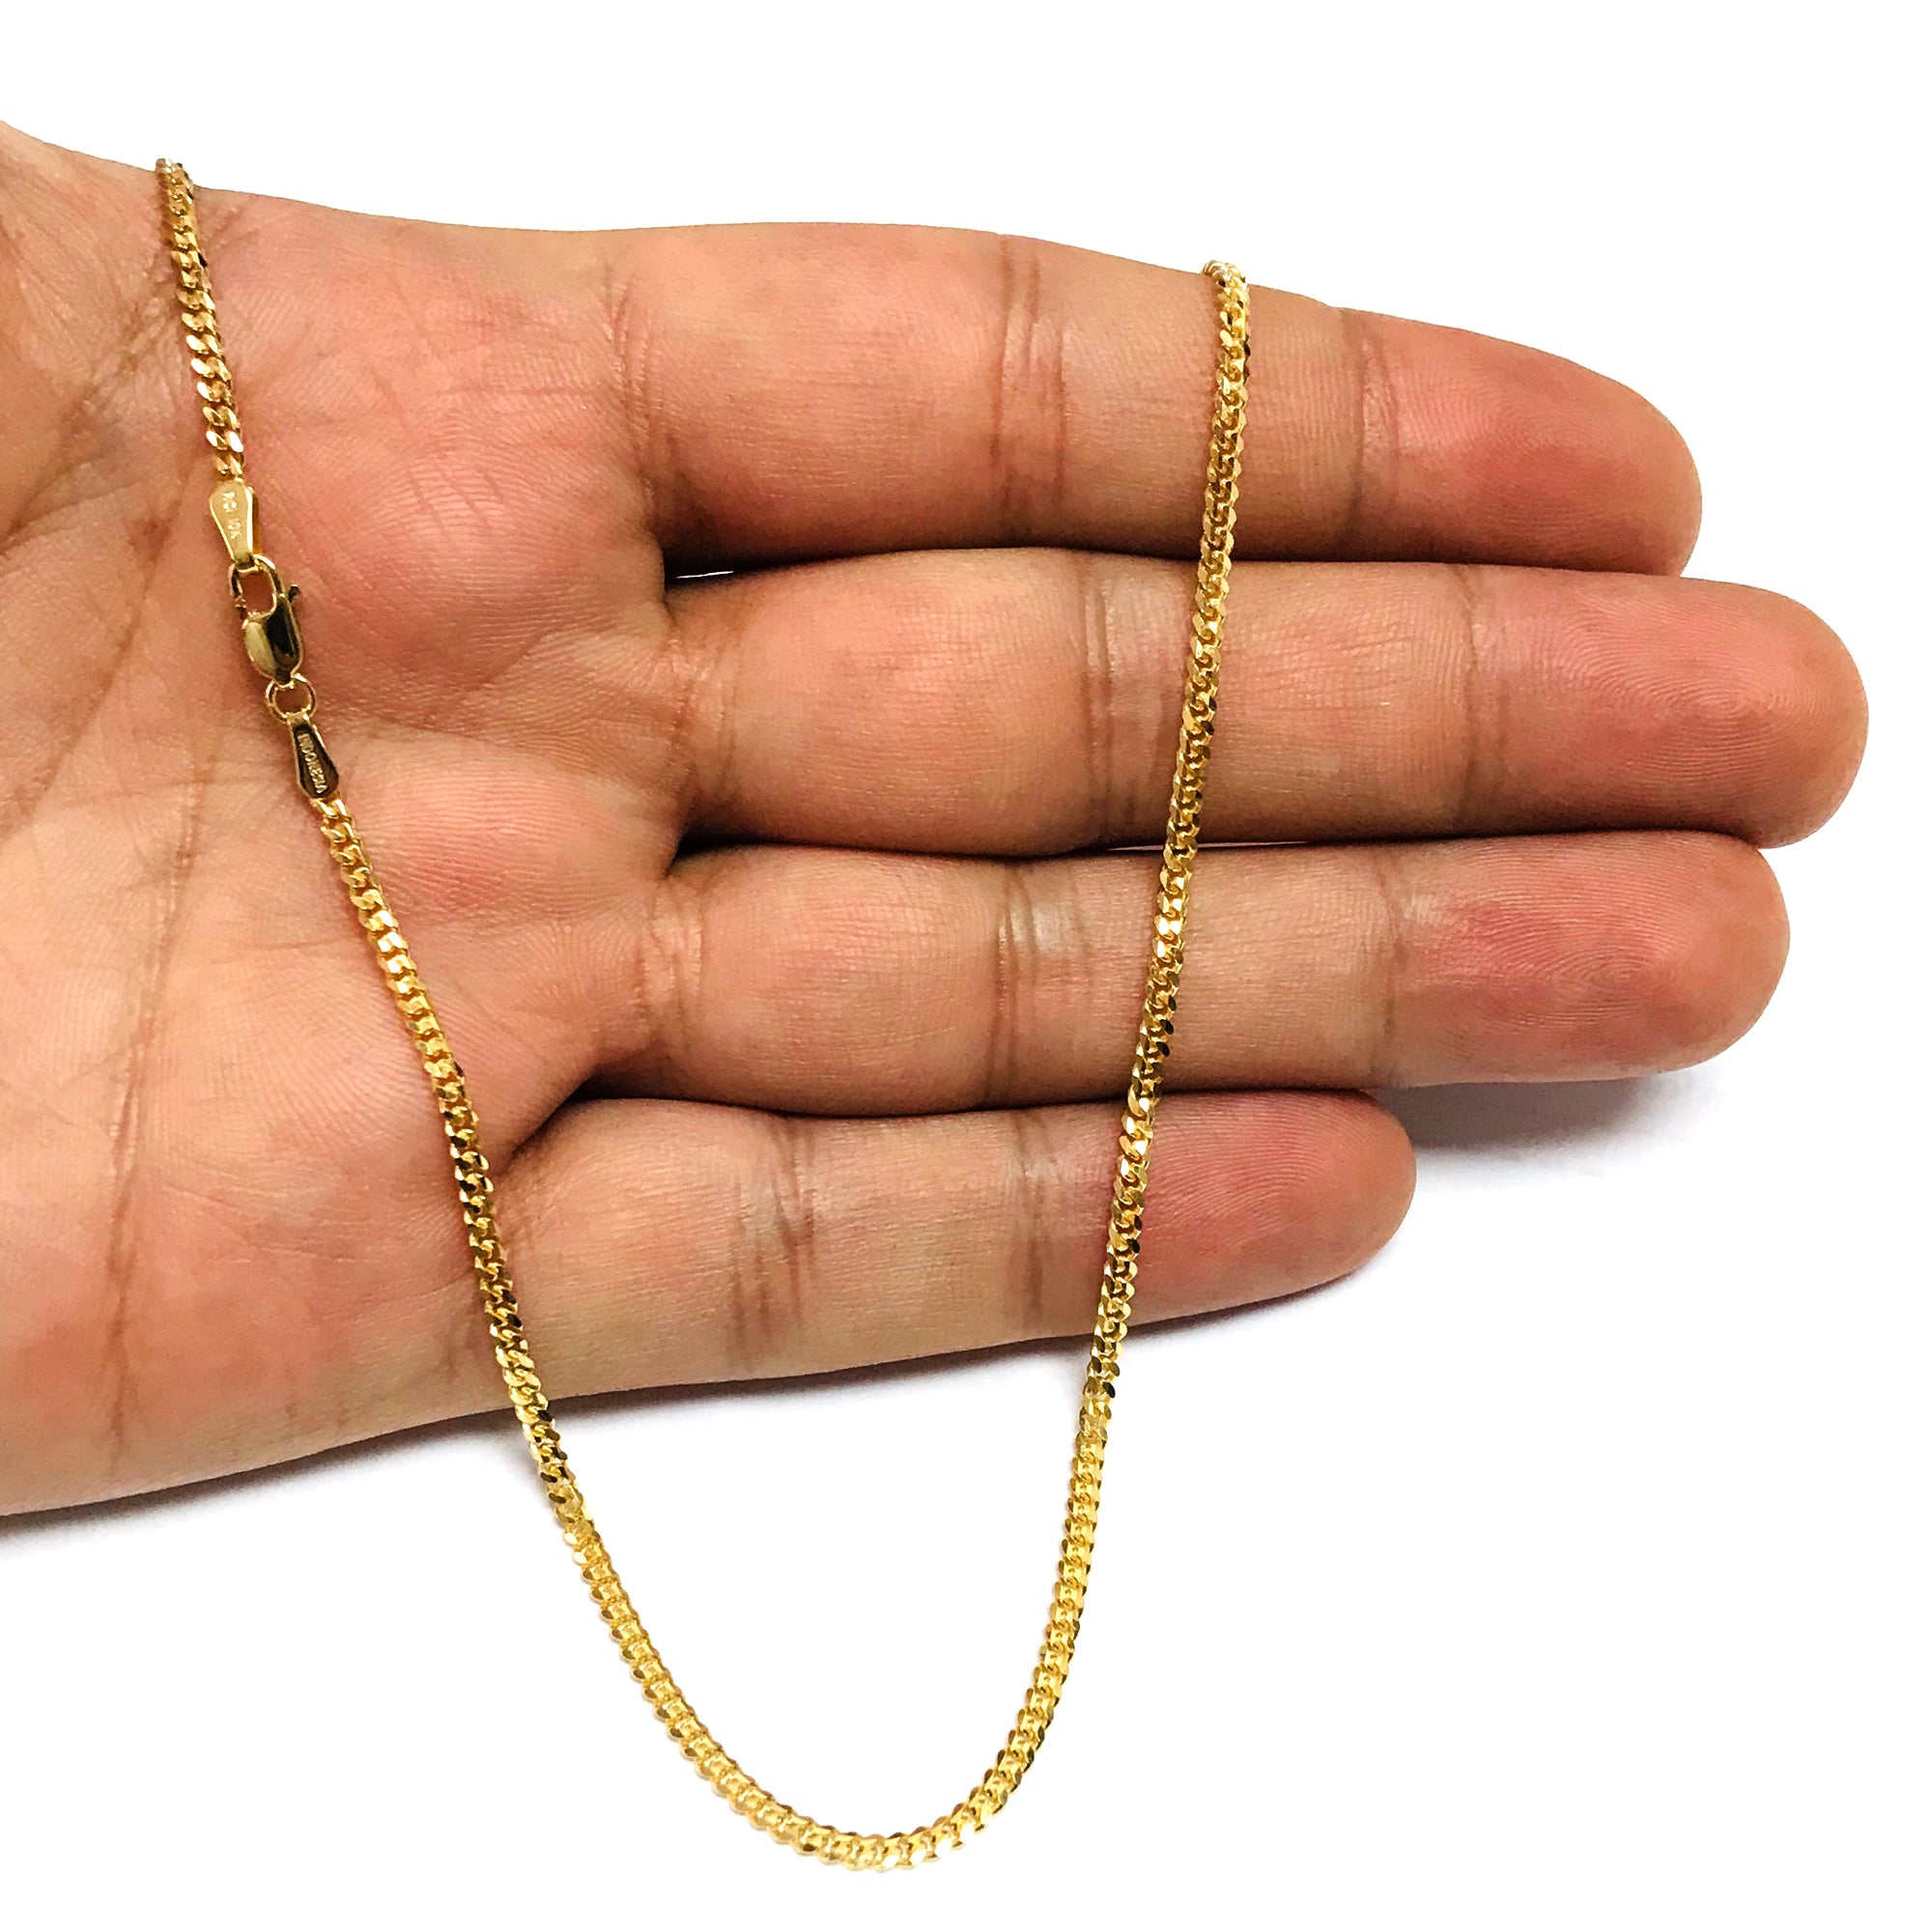 Collar de cadena Gourmette de oro amarillo de 10 quilates, joyería fina de diseño de 2,0 mm para hombres y mujeres